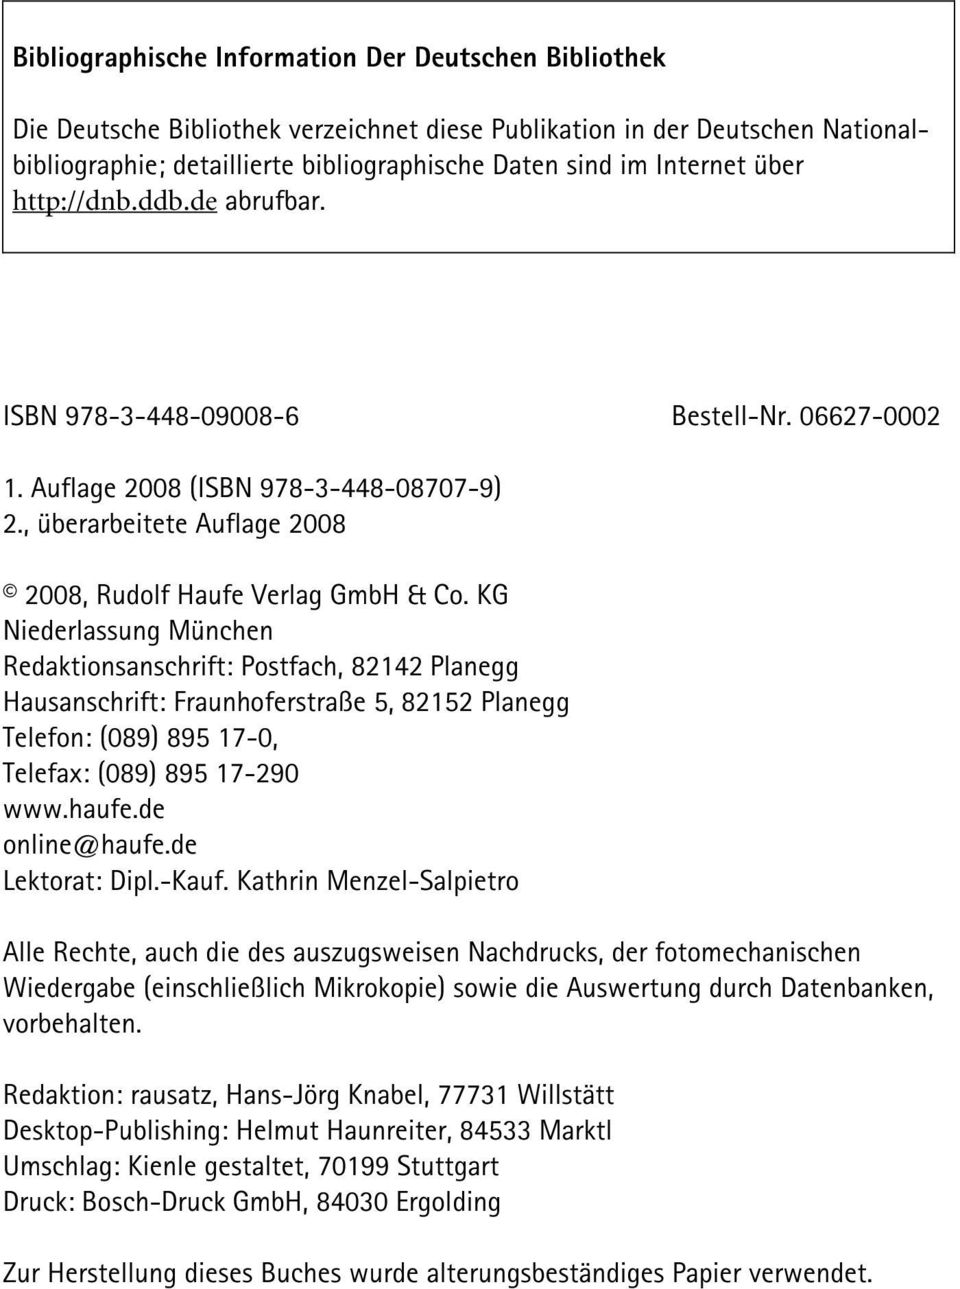 KG Niederlassung München Redaktionsanschrift: Postfach, 82142 Planegg Hausanschrift: Fraunhoferstraße 5, 82152 Planegg Telefon: (089) 895 17-0, Telefax: (089) 895 17-290 www.haufe.de online@haufe.